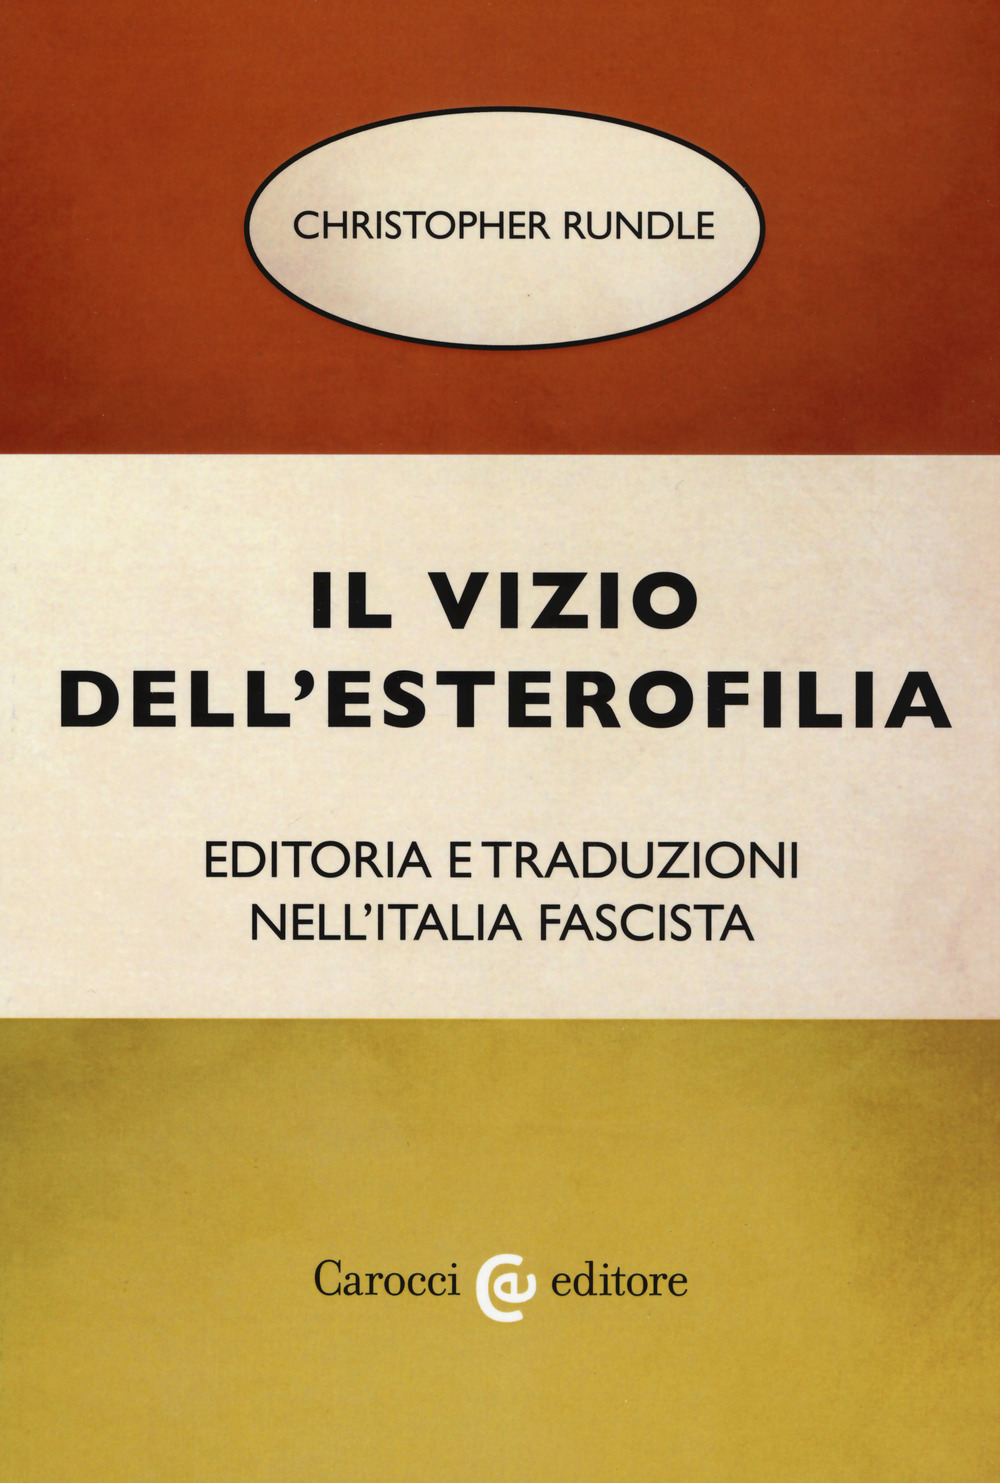 Il vizio dell'esterofilia. Editoria e traduzioni nell'Italia fascista